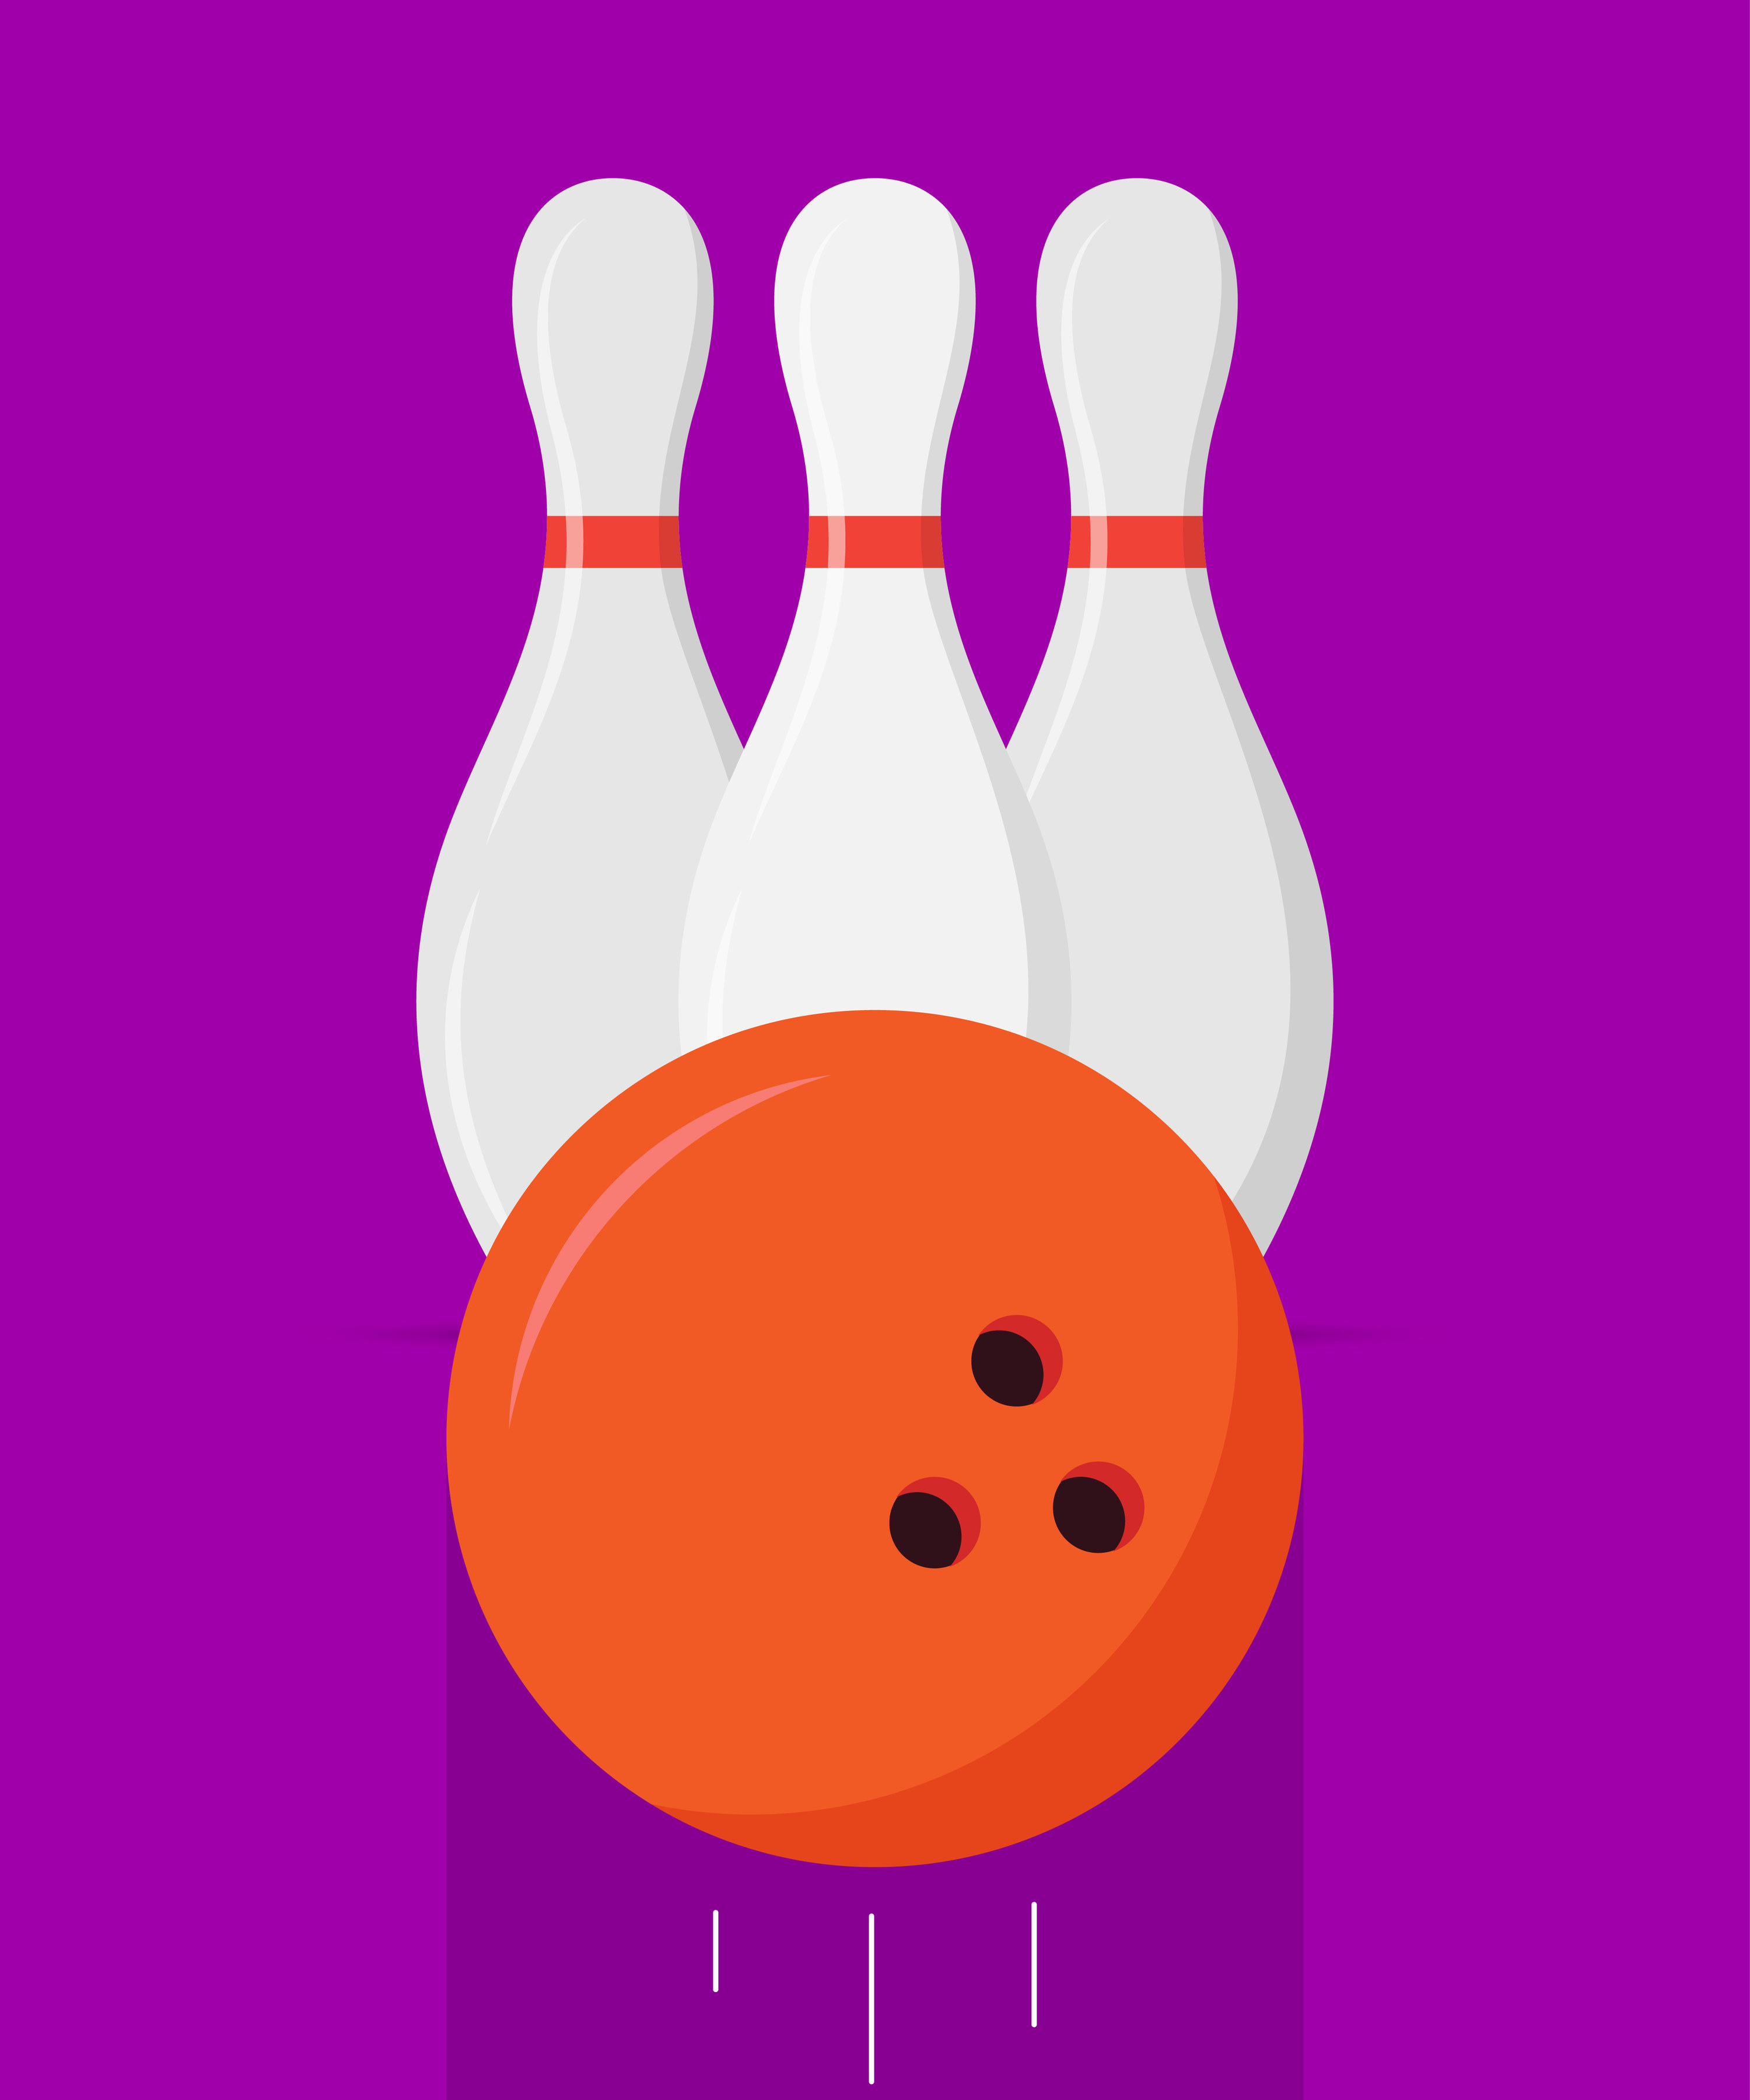 A bowling ball and three pins